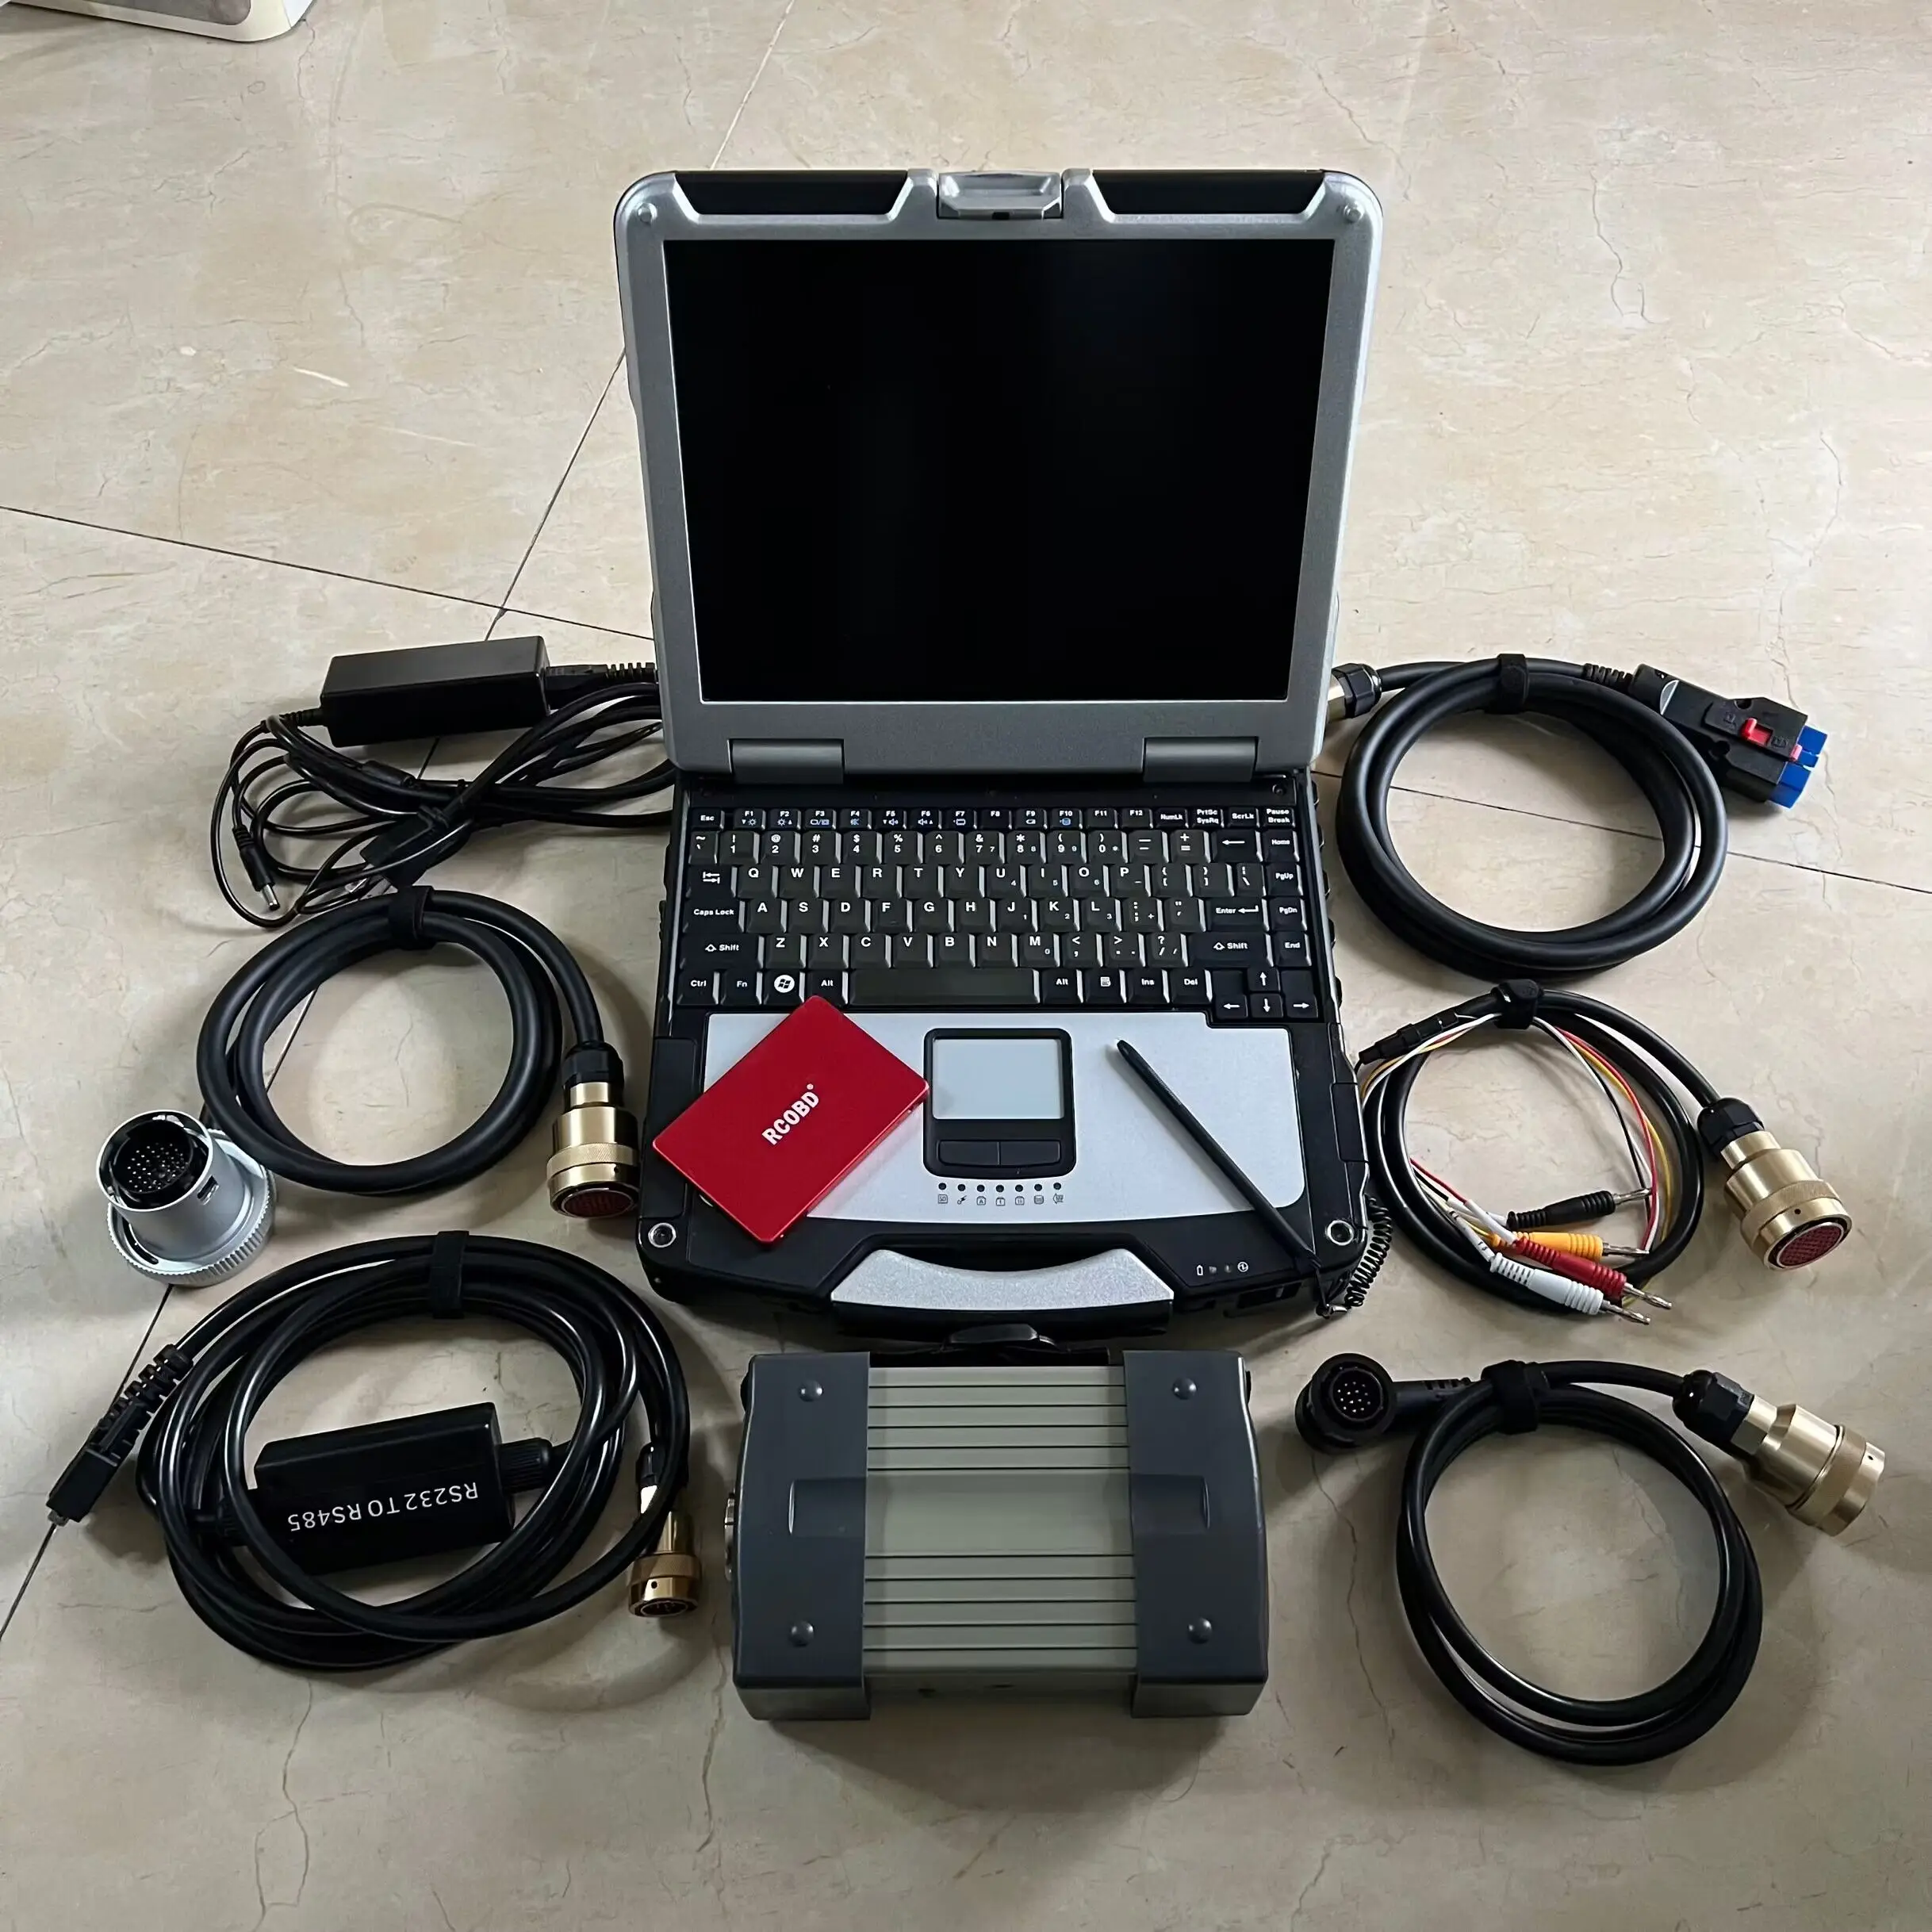 Полночиповый Диагностический инструмент MB Star C3 Пять кабелей 240 ГБ SSSD V2014.12 Программное обеспечение Super CF31 I5 Toughbook 4G ВЕСЬ набор Готов к работе